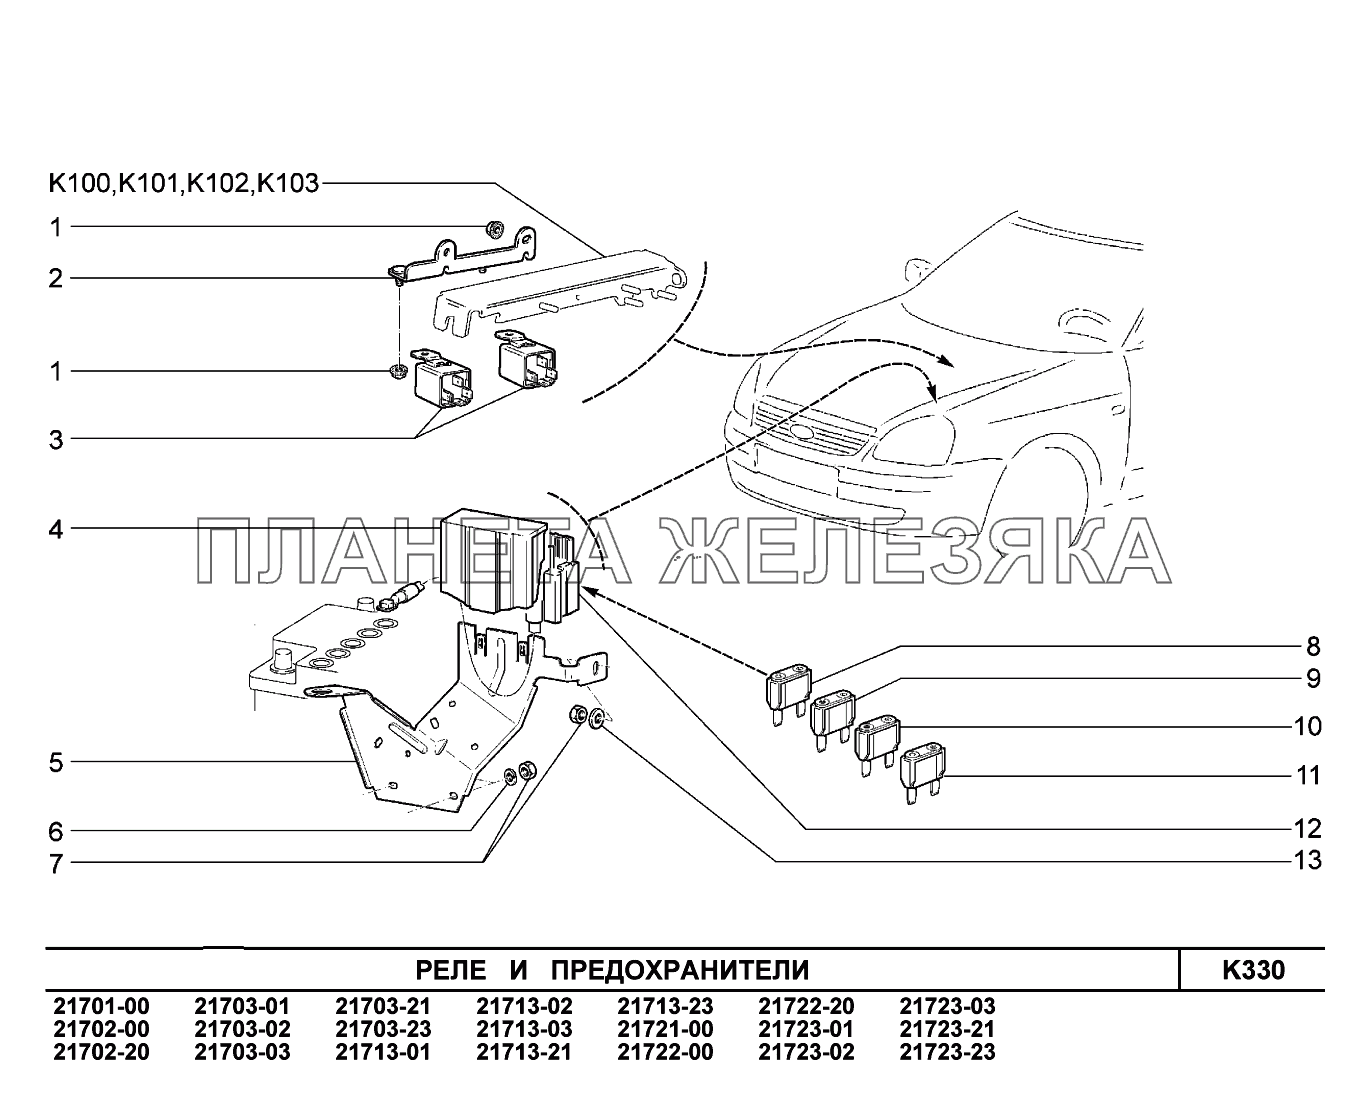 K330. Реле и предохранители ВАЗ-2170 